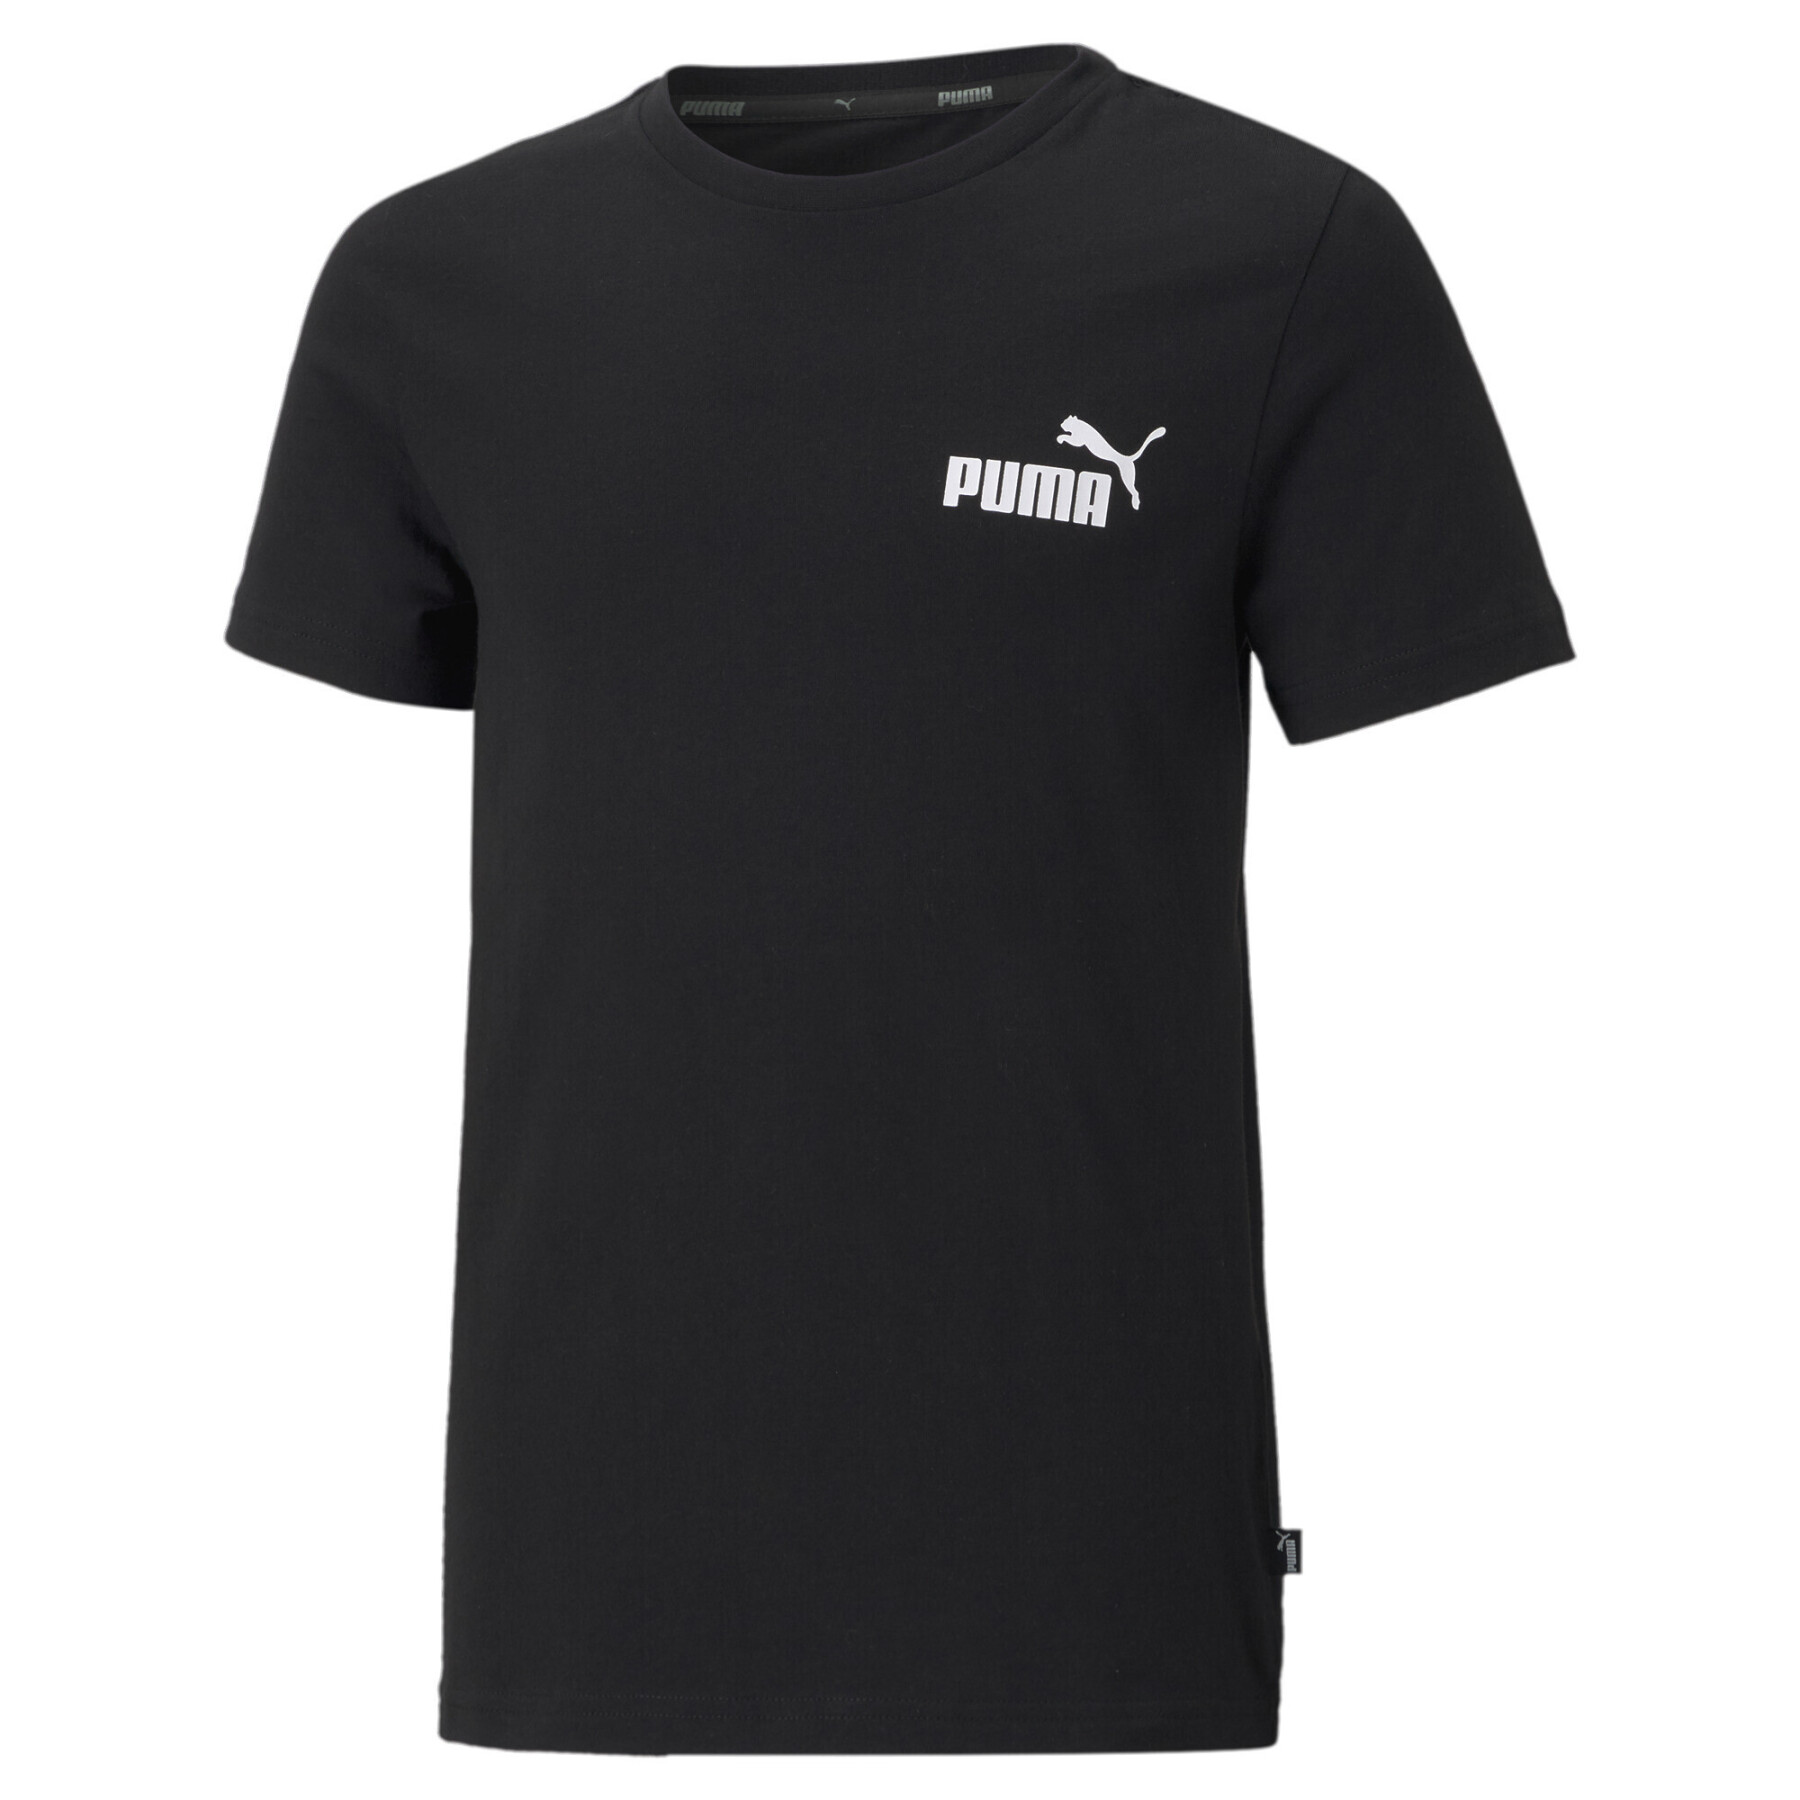 Kinder-T-shirt Puma Ess Small Logo